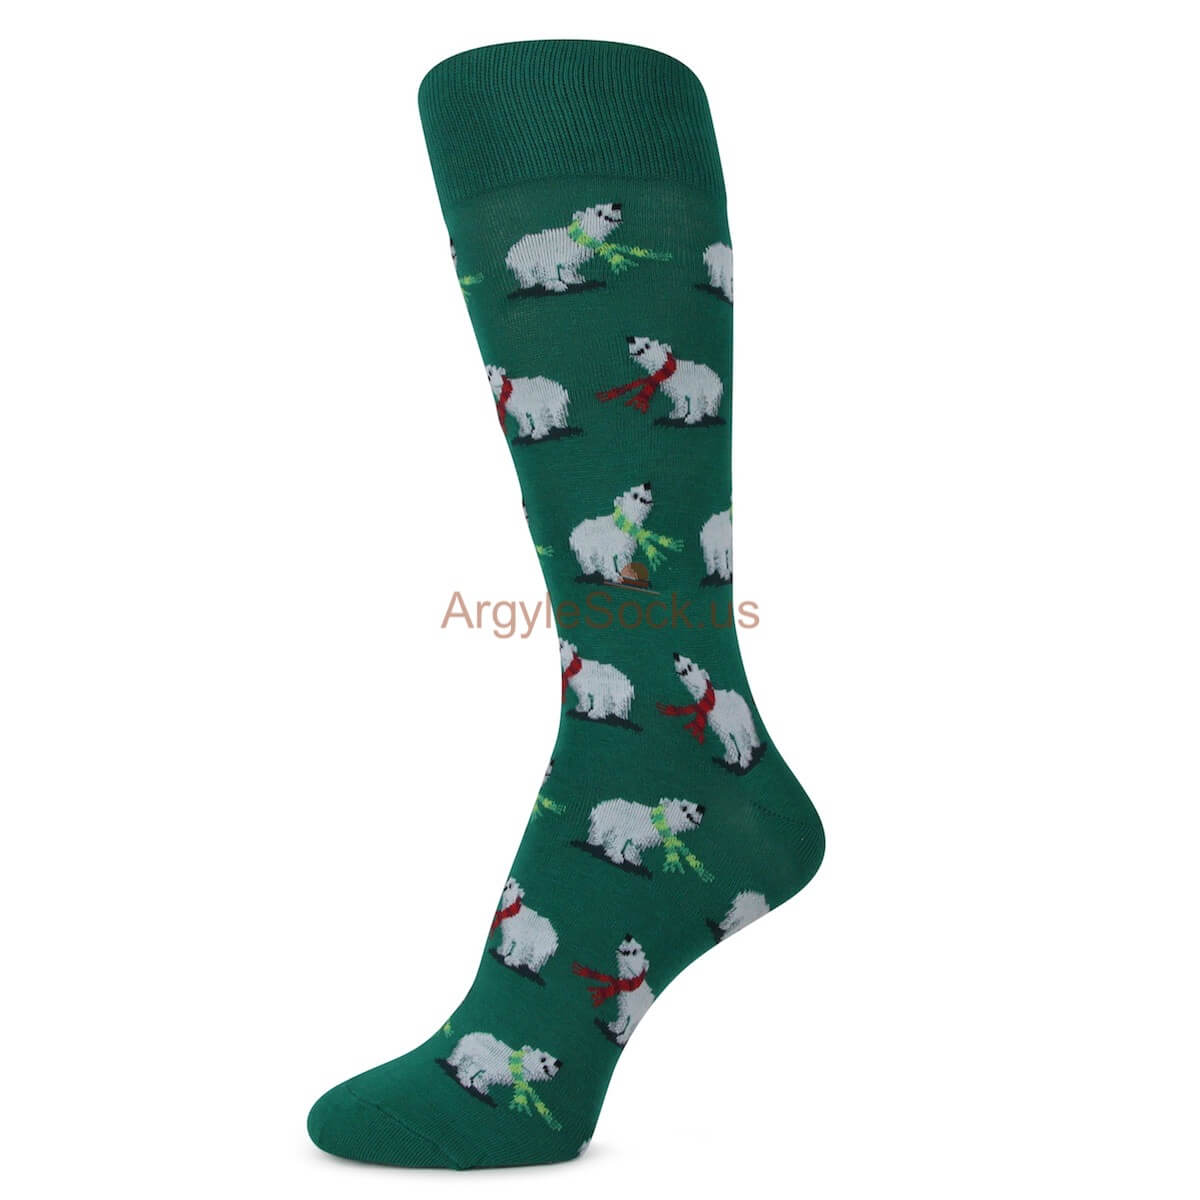 Green with Polar Bear Print Socks For Men